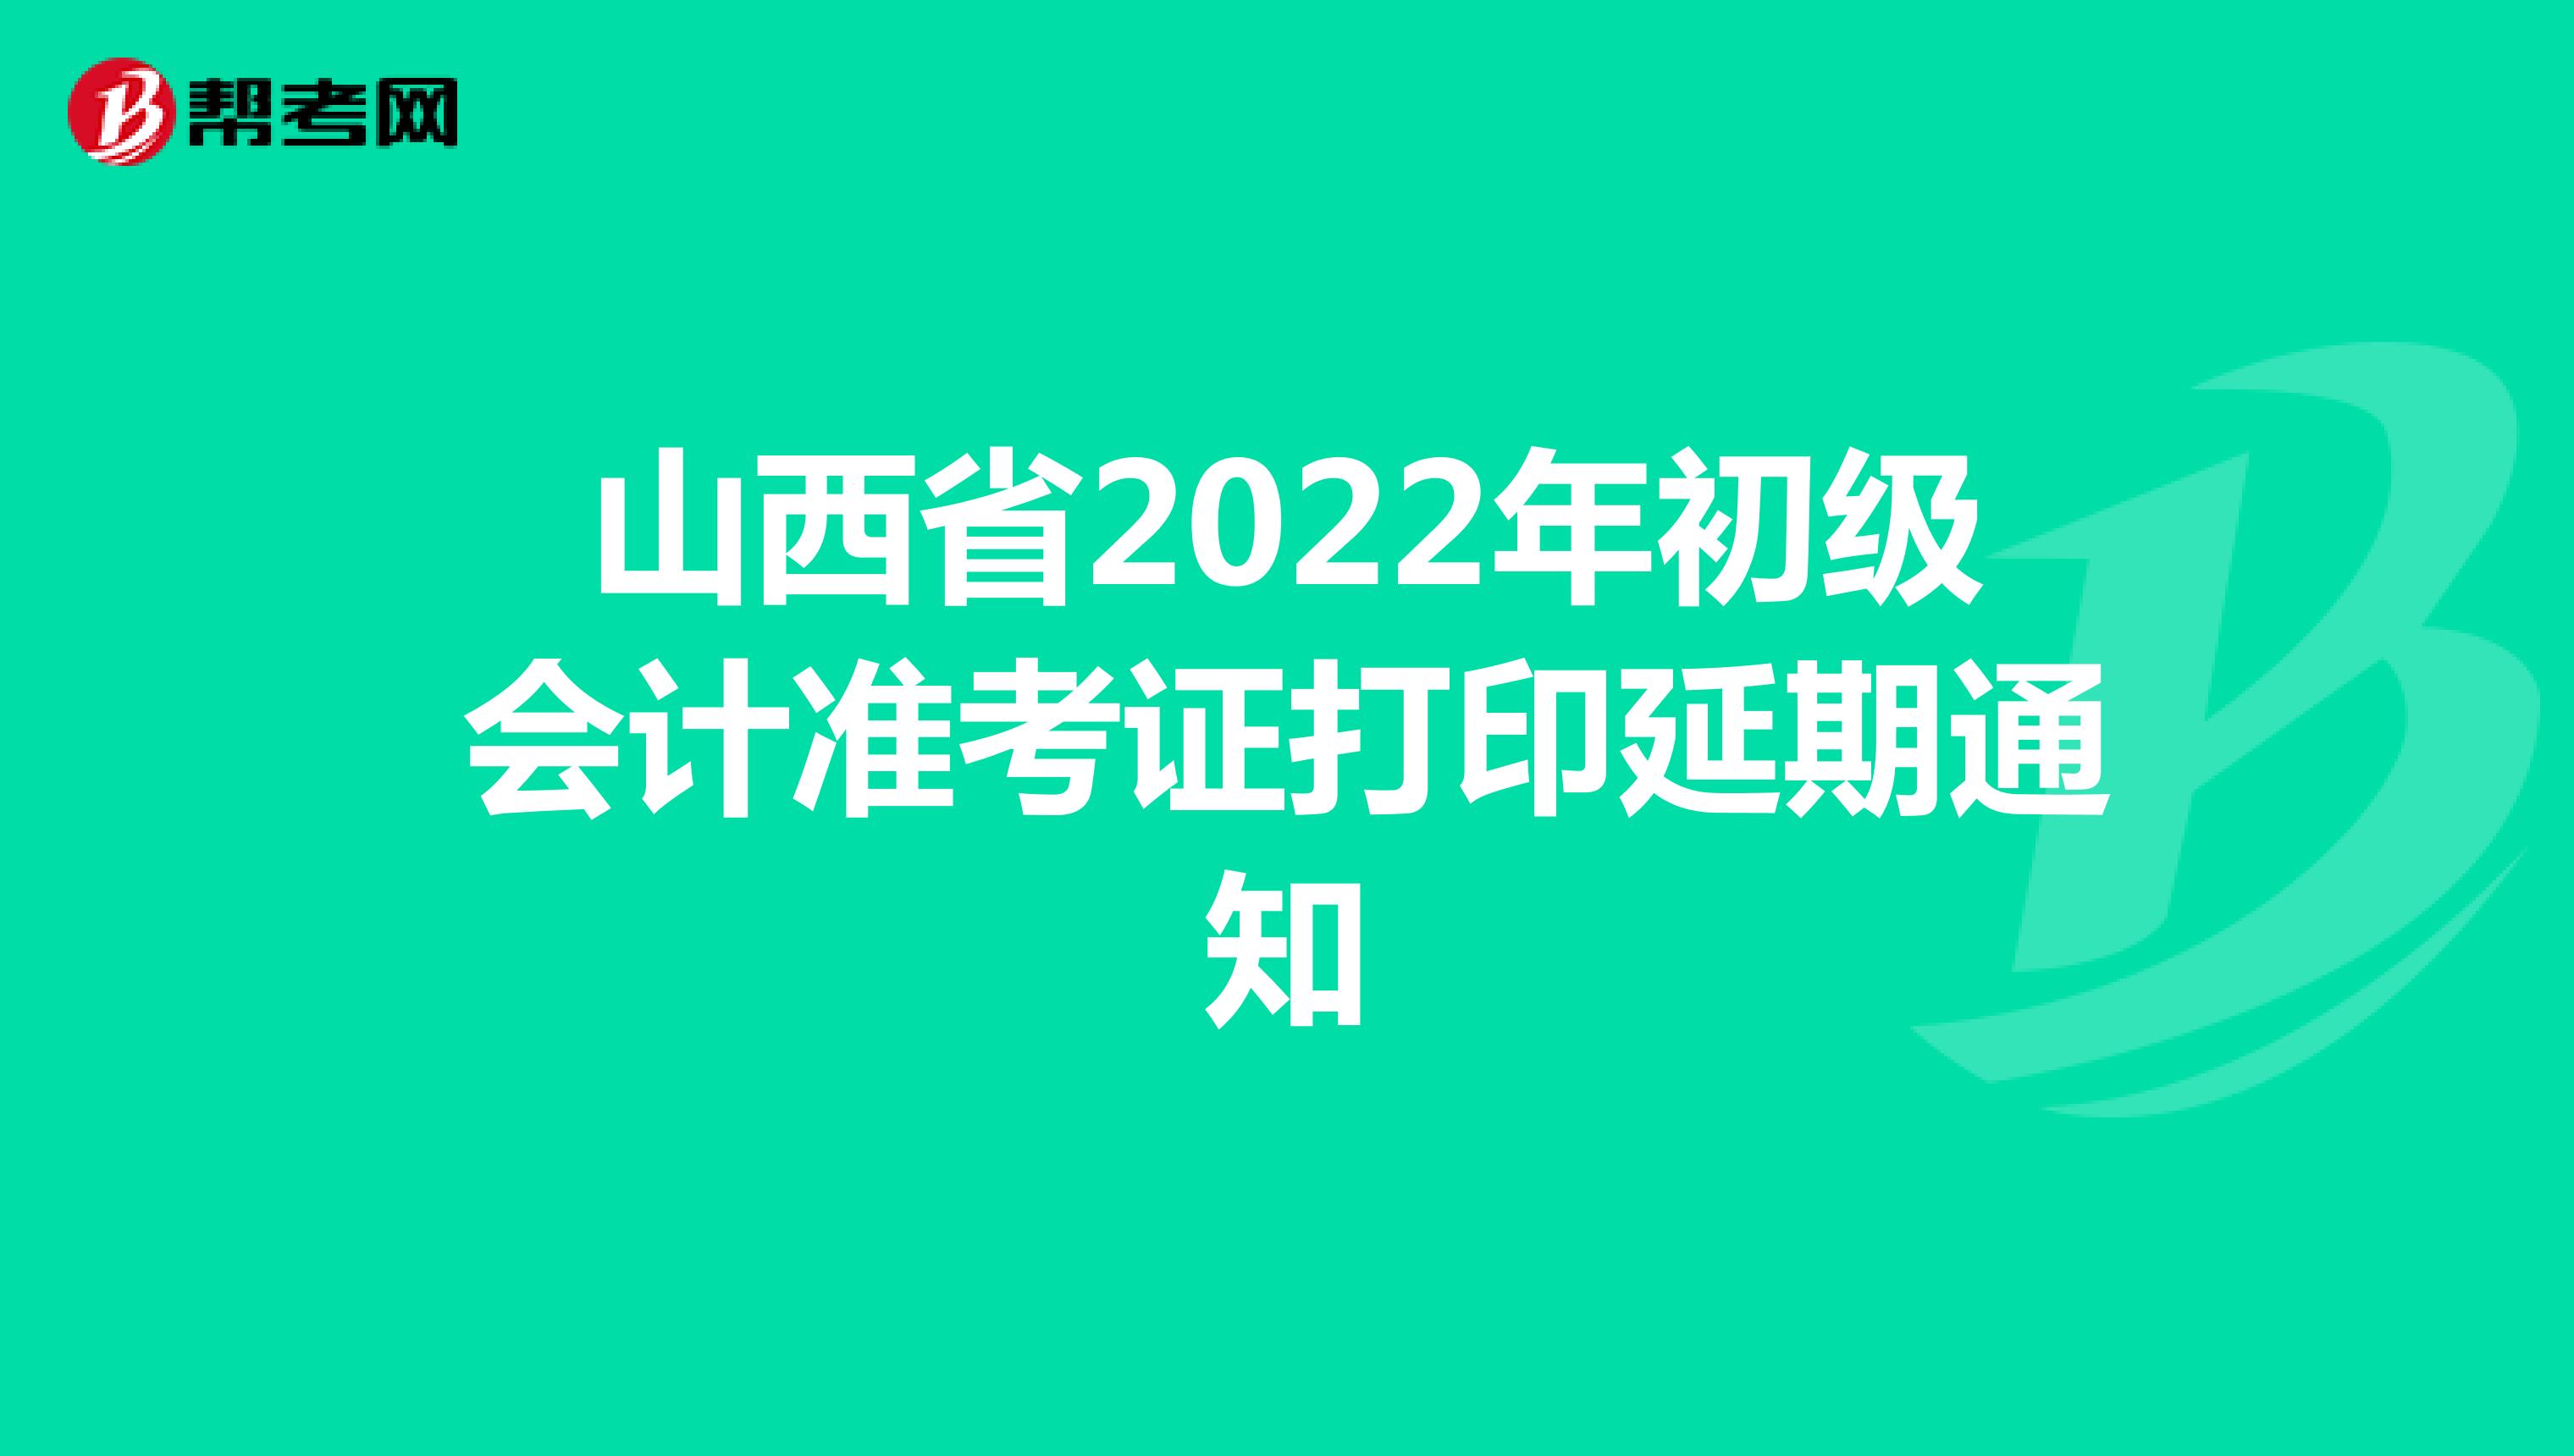 山西省2022年初级会计准考证打印延期通知